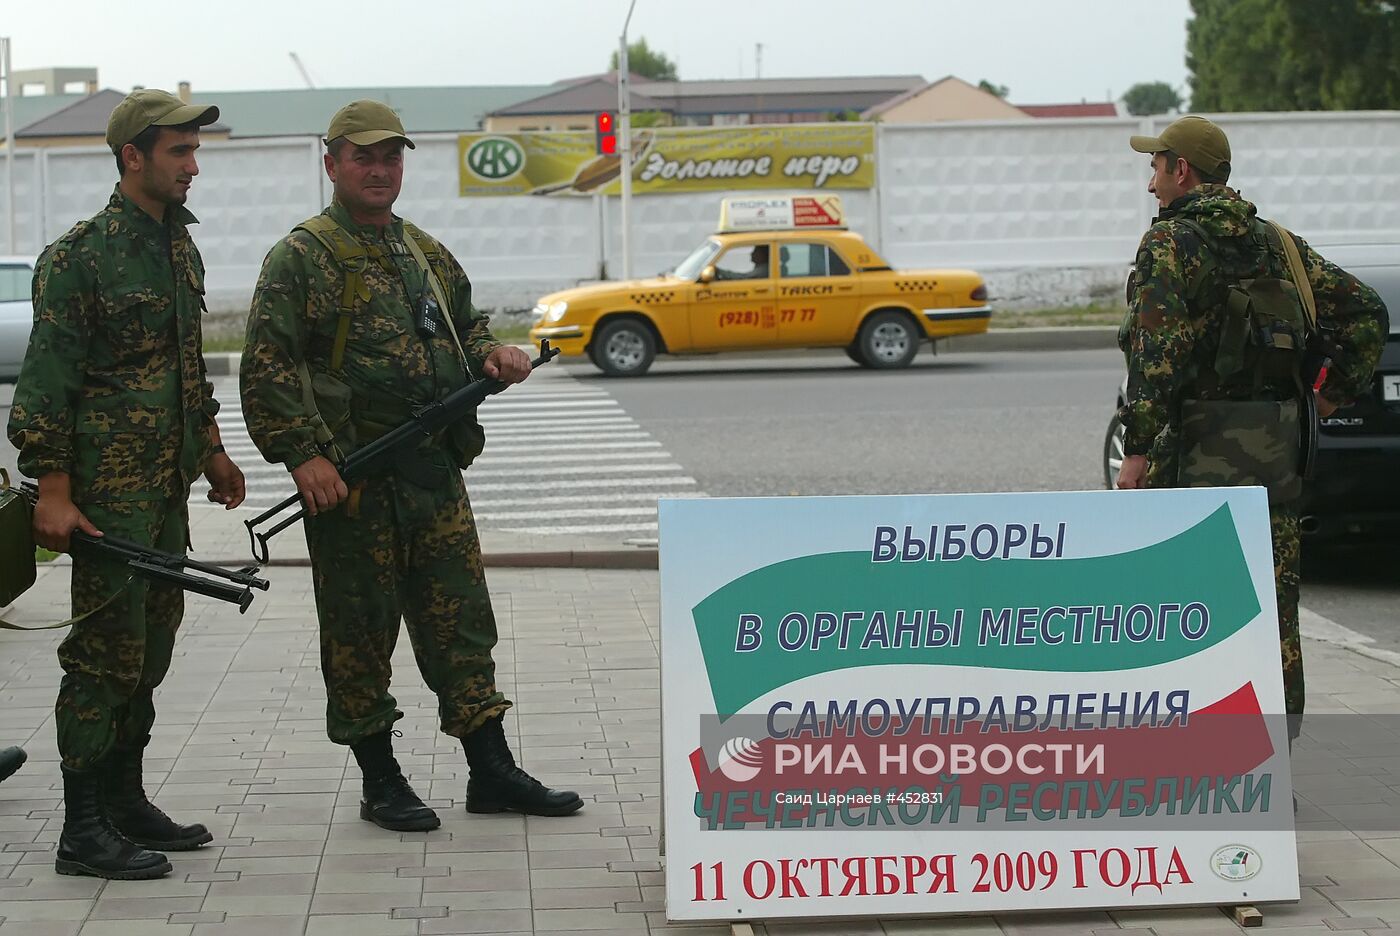 Предвыборная агитация в Грозном